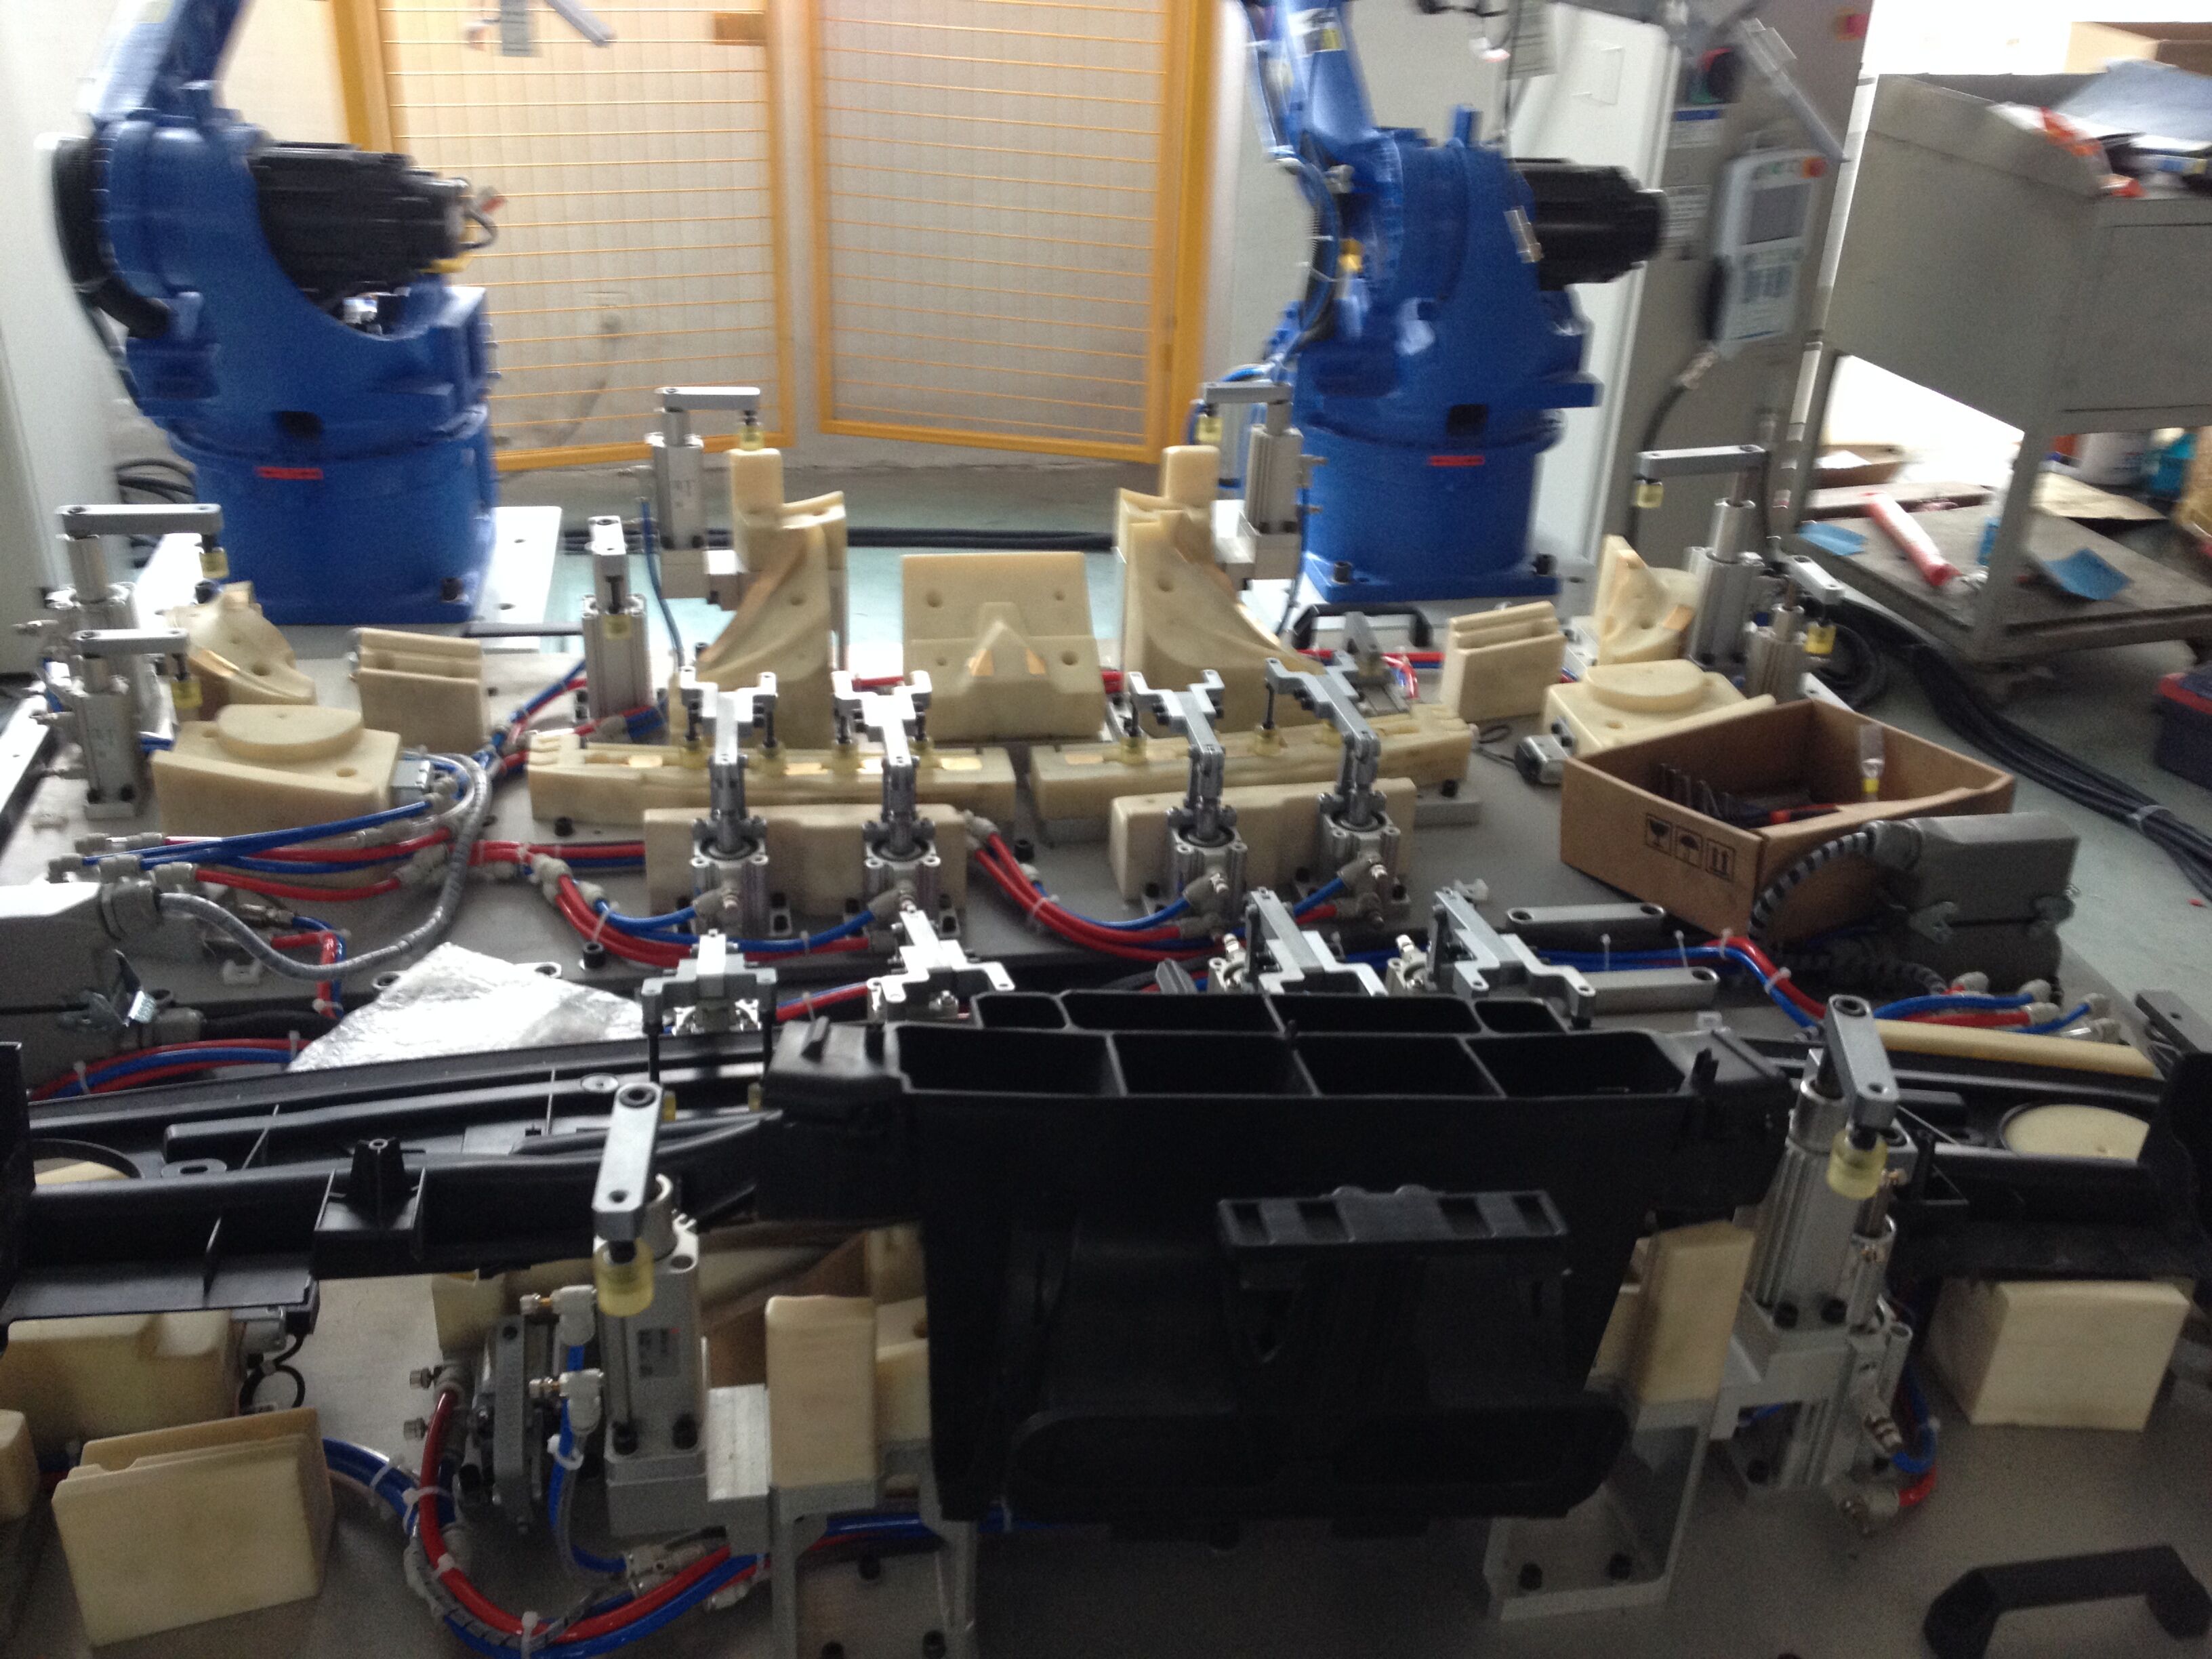 Ultrasonic robotic welding on multiaxis machine